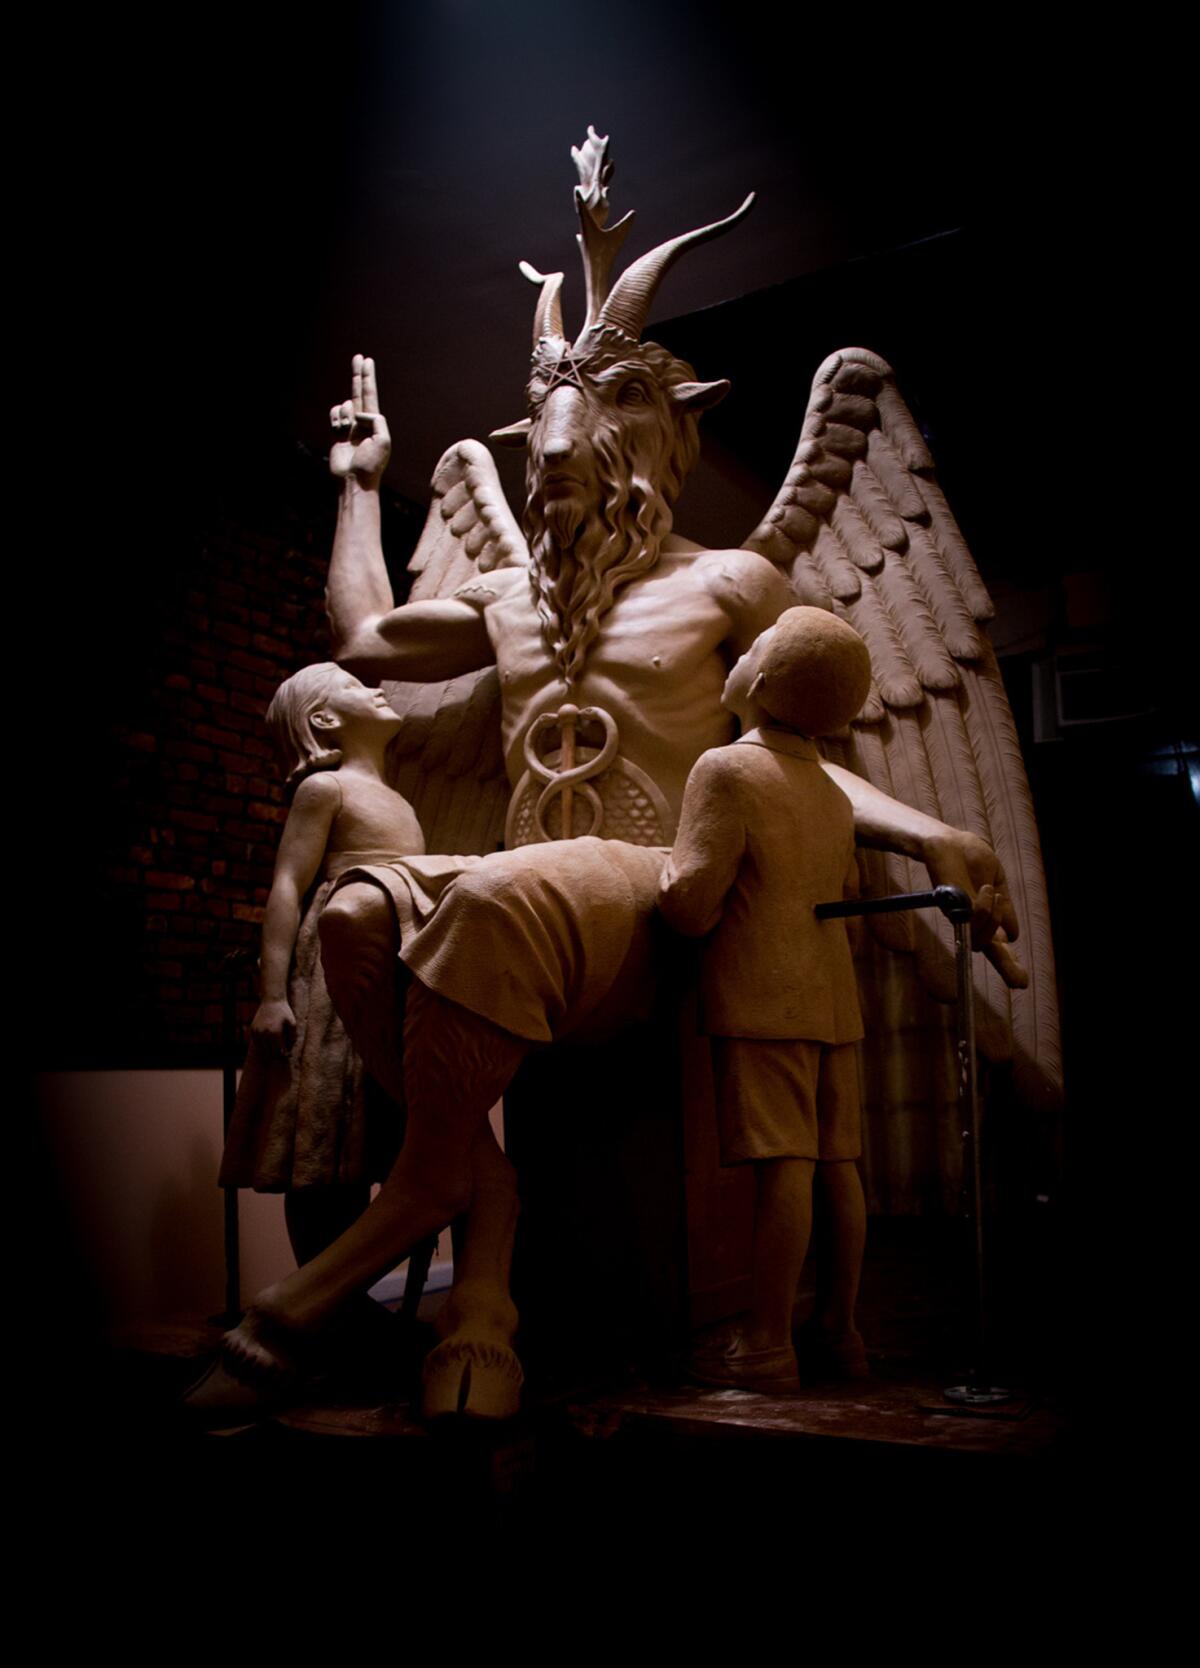 Una estatua de bronce de Satán con cabeza de cabra, alas y cascos en lugar de pies será develada en fecha próxima en un evento privado en Detroit, según el dueño de la pieza, el grupo El Templo Satánico. La estatua mide 2,59 metros (8,5 pies) de alto y pesa tonelada y media.